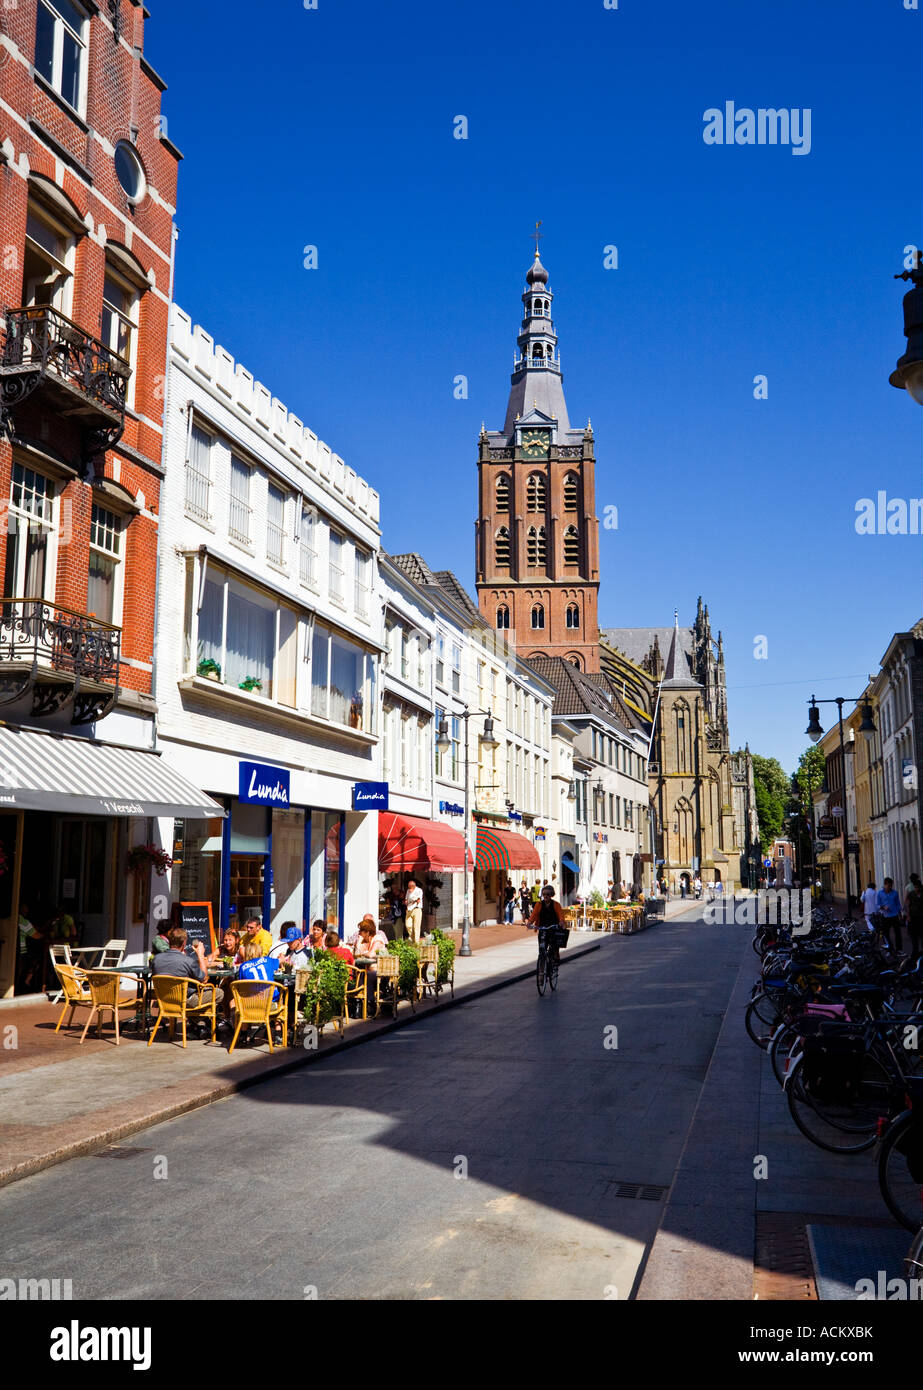 St Jans cattedrale in s-Hertogenbosch, capitale del Nord Brabante regione, nei Paesi Bassi, in Europa a partire dal centro della città Foto Stock